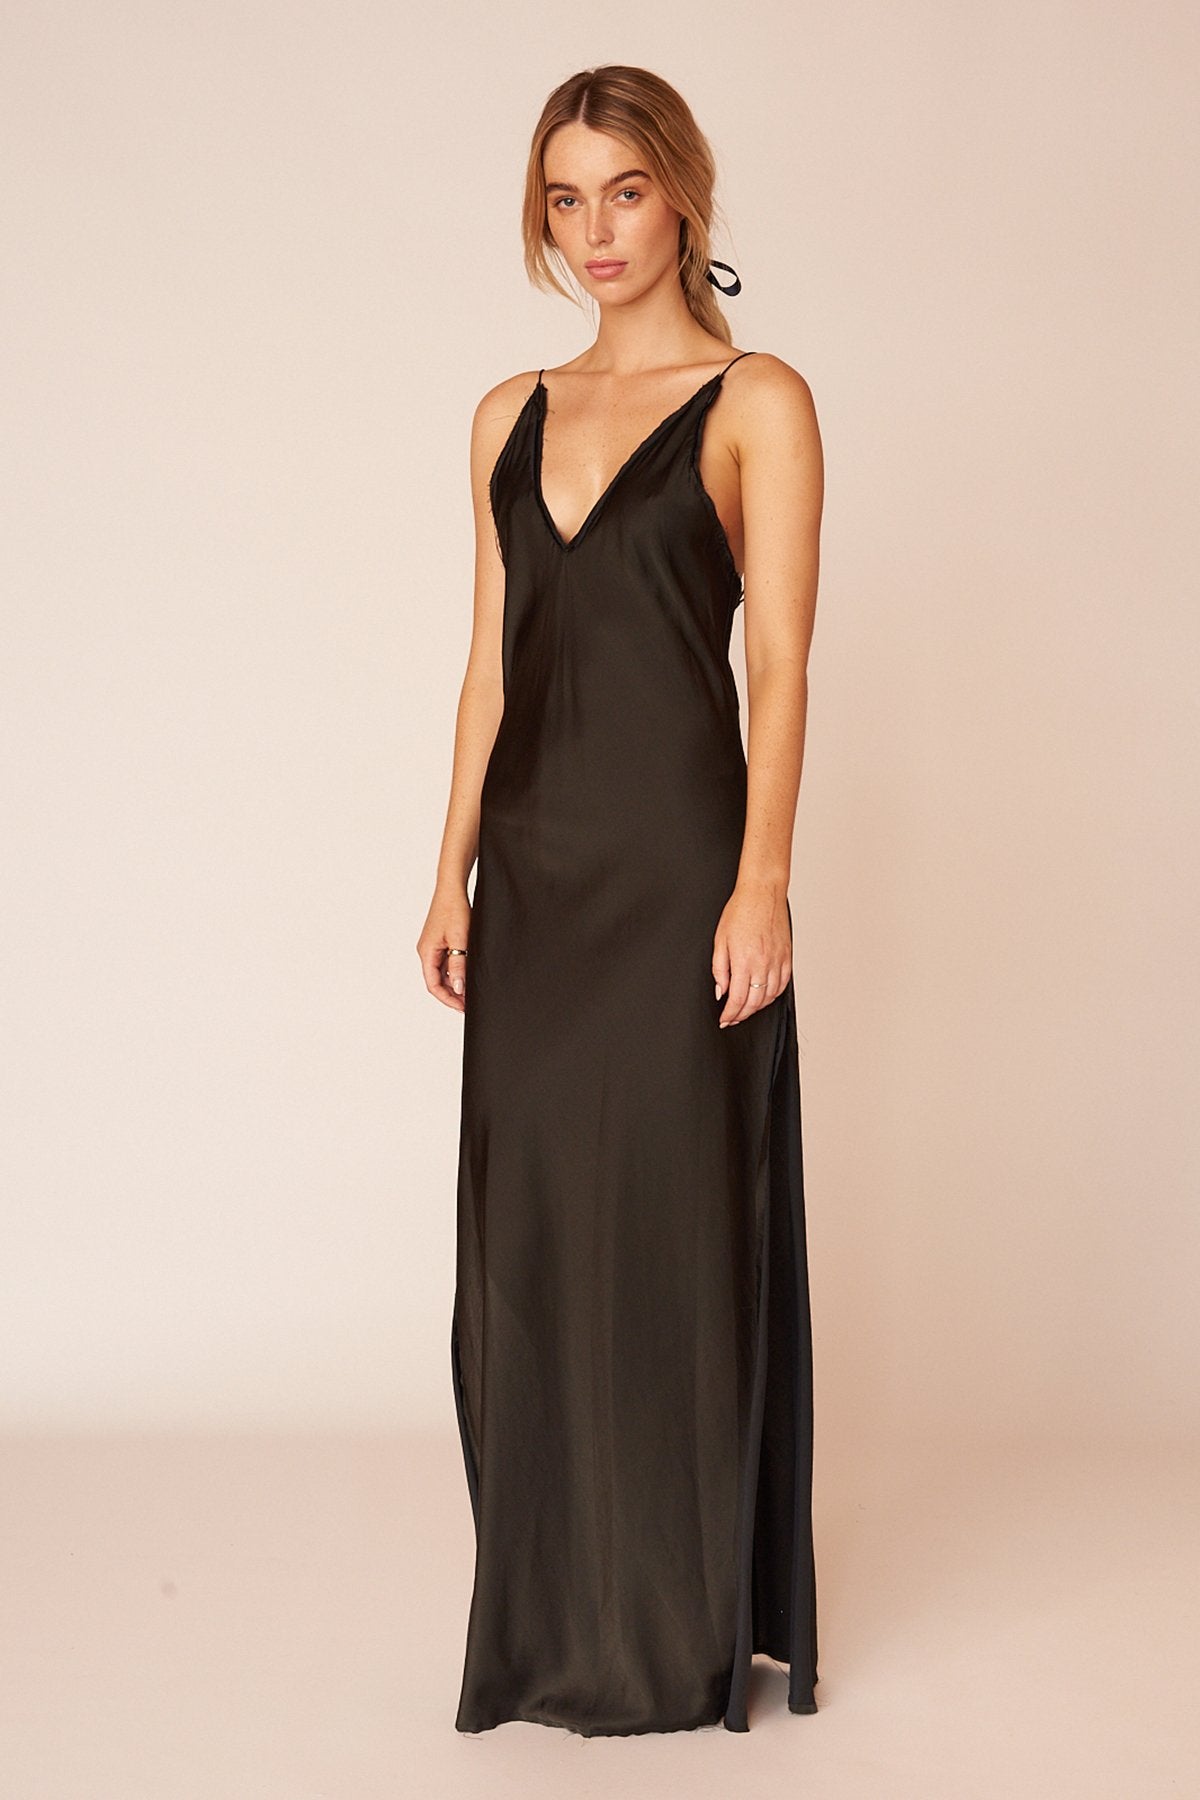 The O'Keeffe Full Length Dress - Ebony - LOOMES